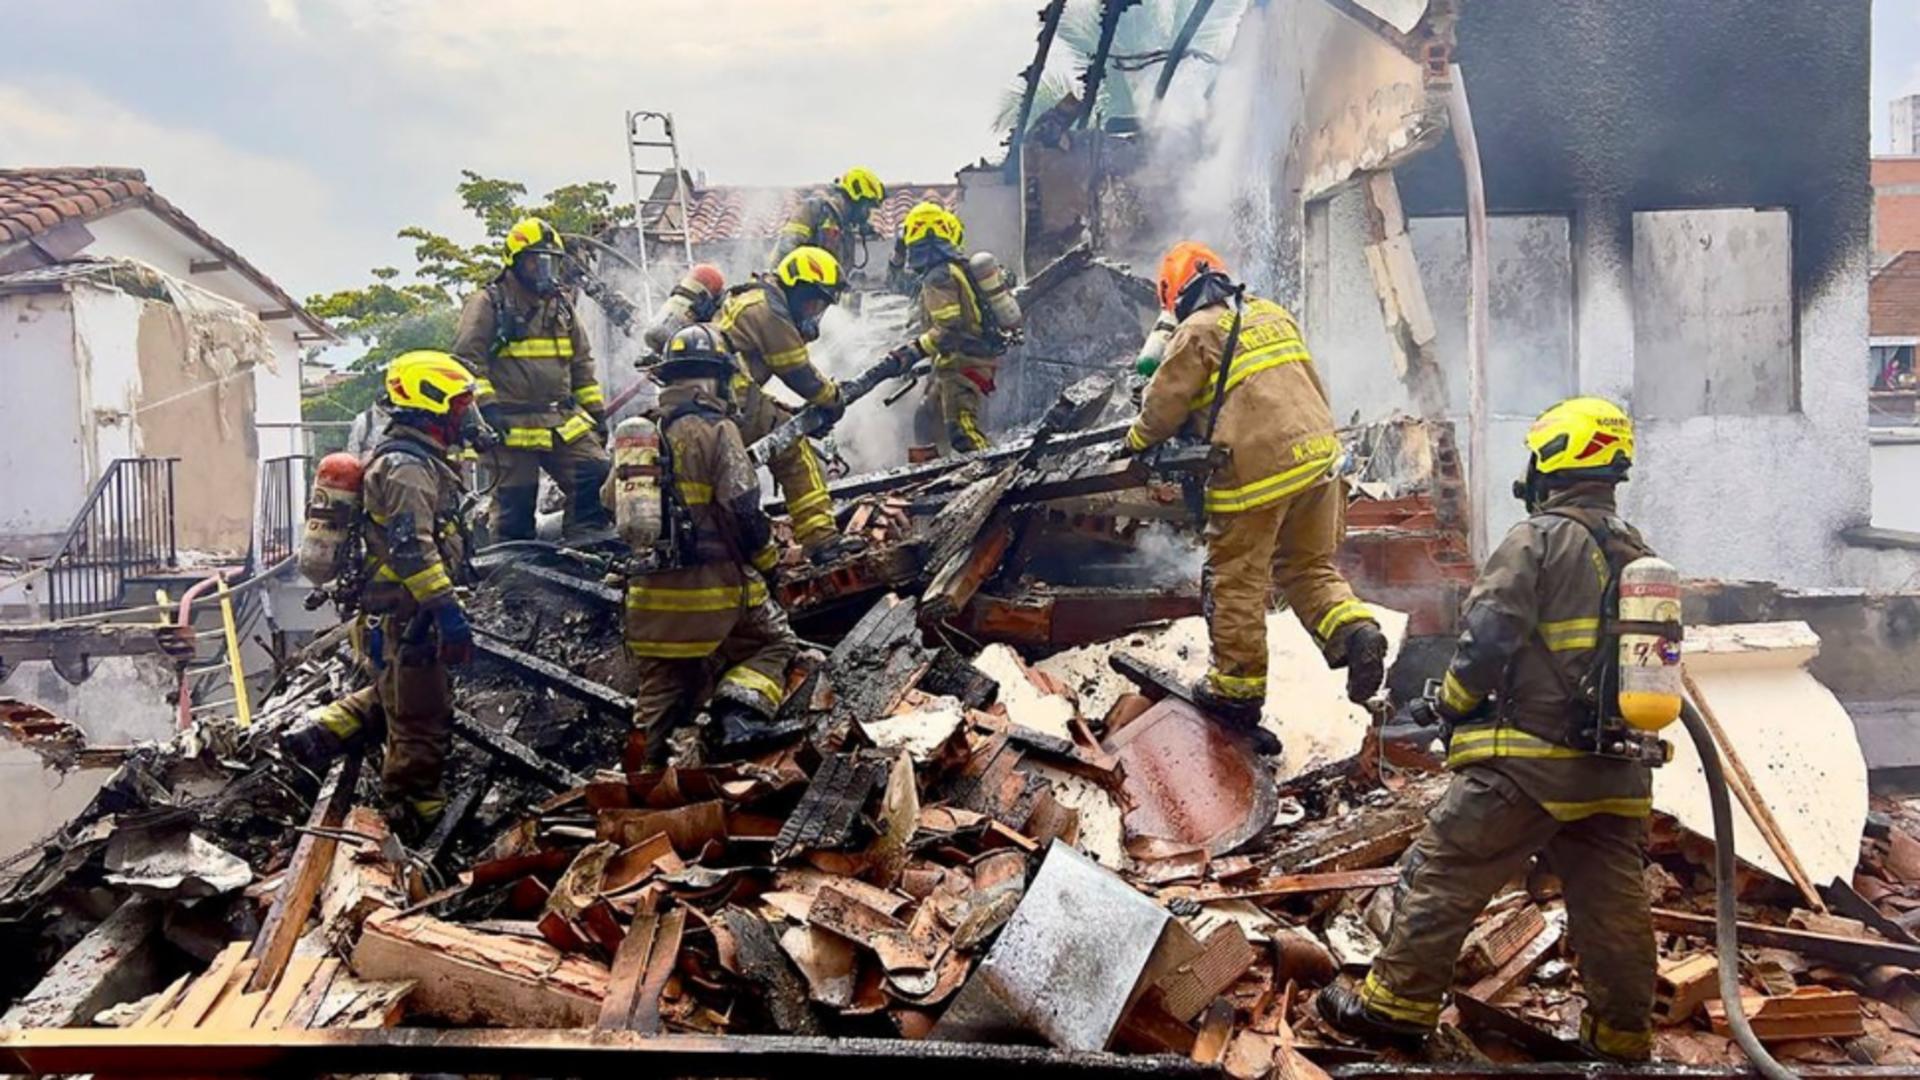 Tragedie aviatică - AVION PRĂBUȘIT peste un cartier rezidențial: nu există supraviețuitori / Foto: Profi Media